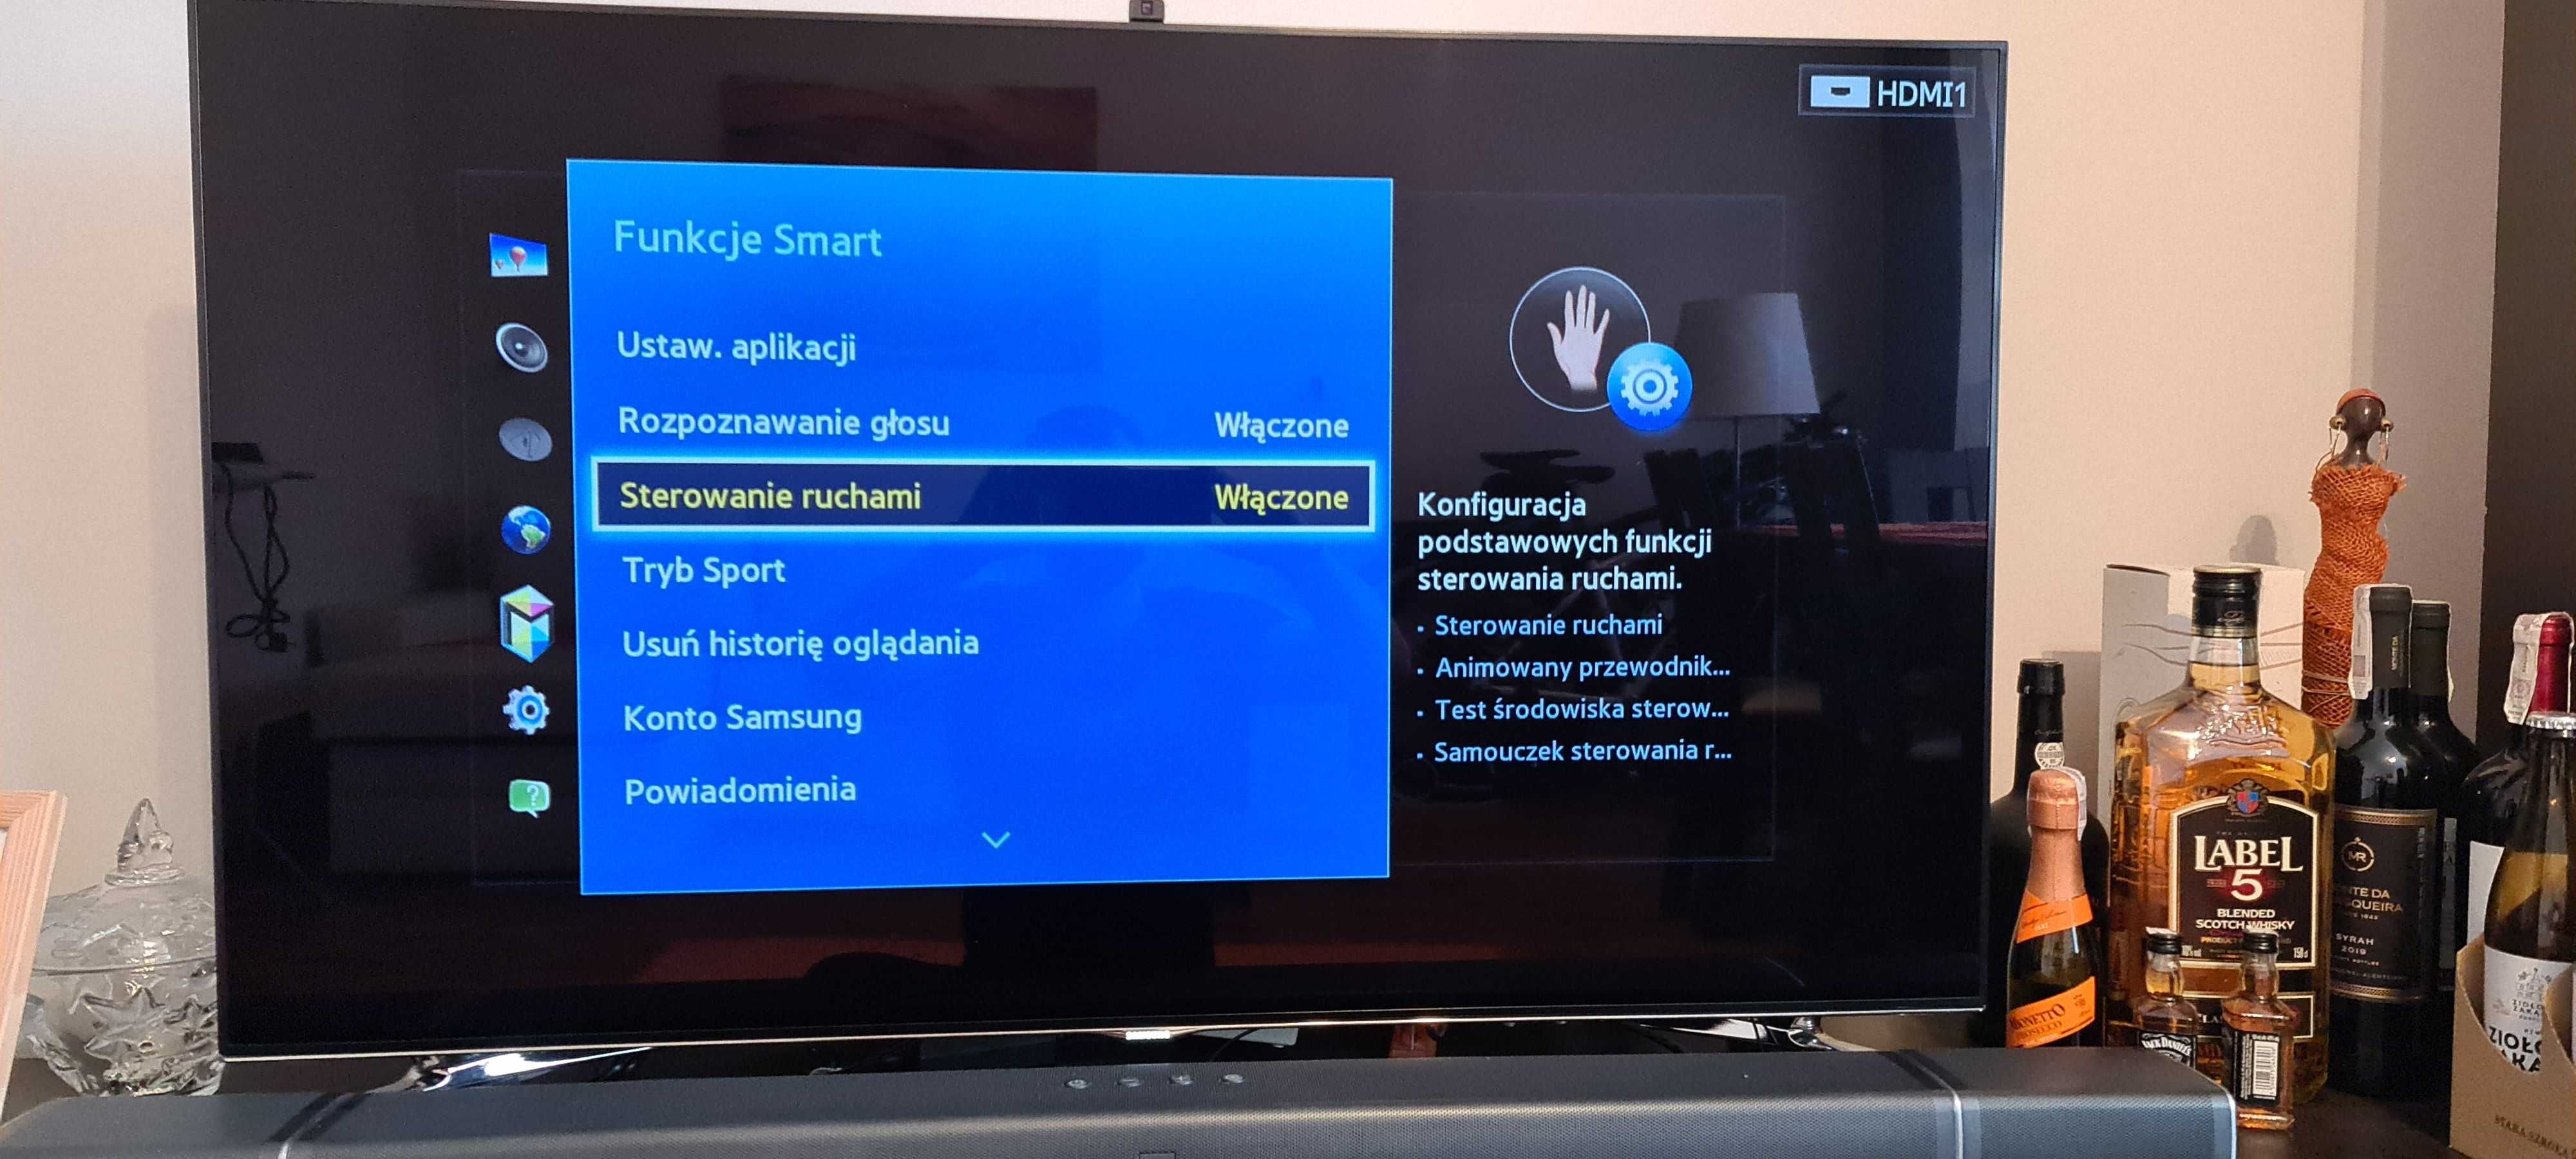 Tv Samsung Smart TV 46 cali